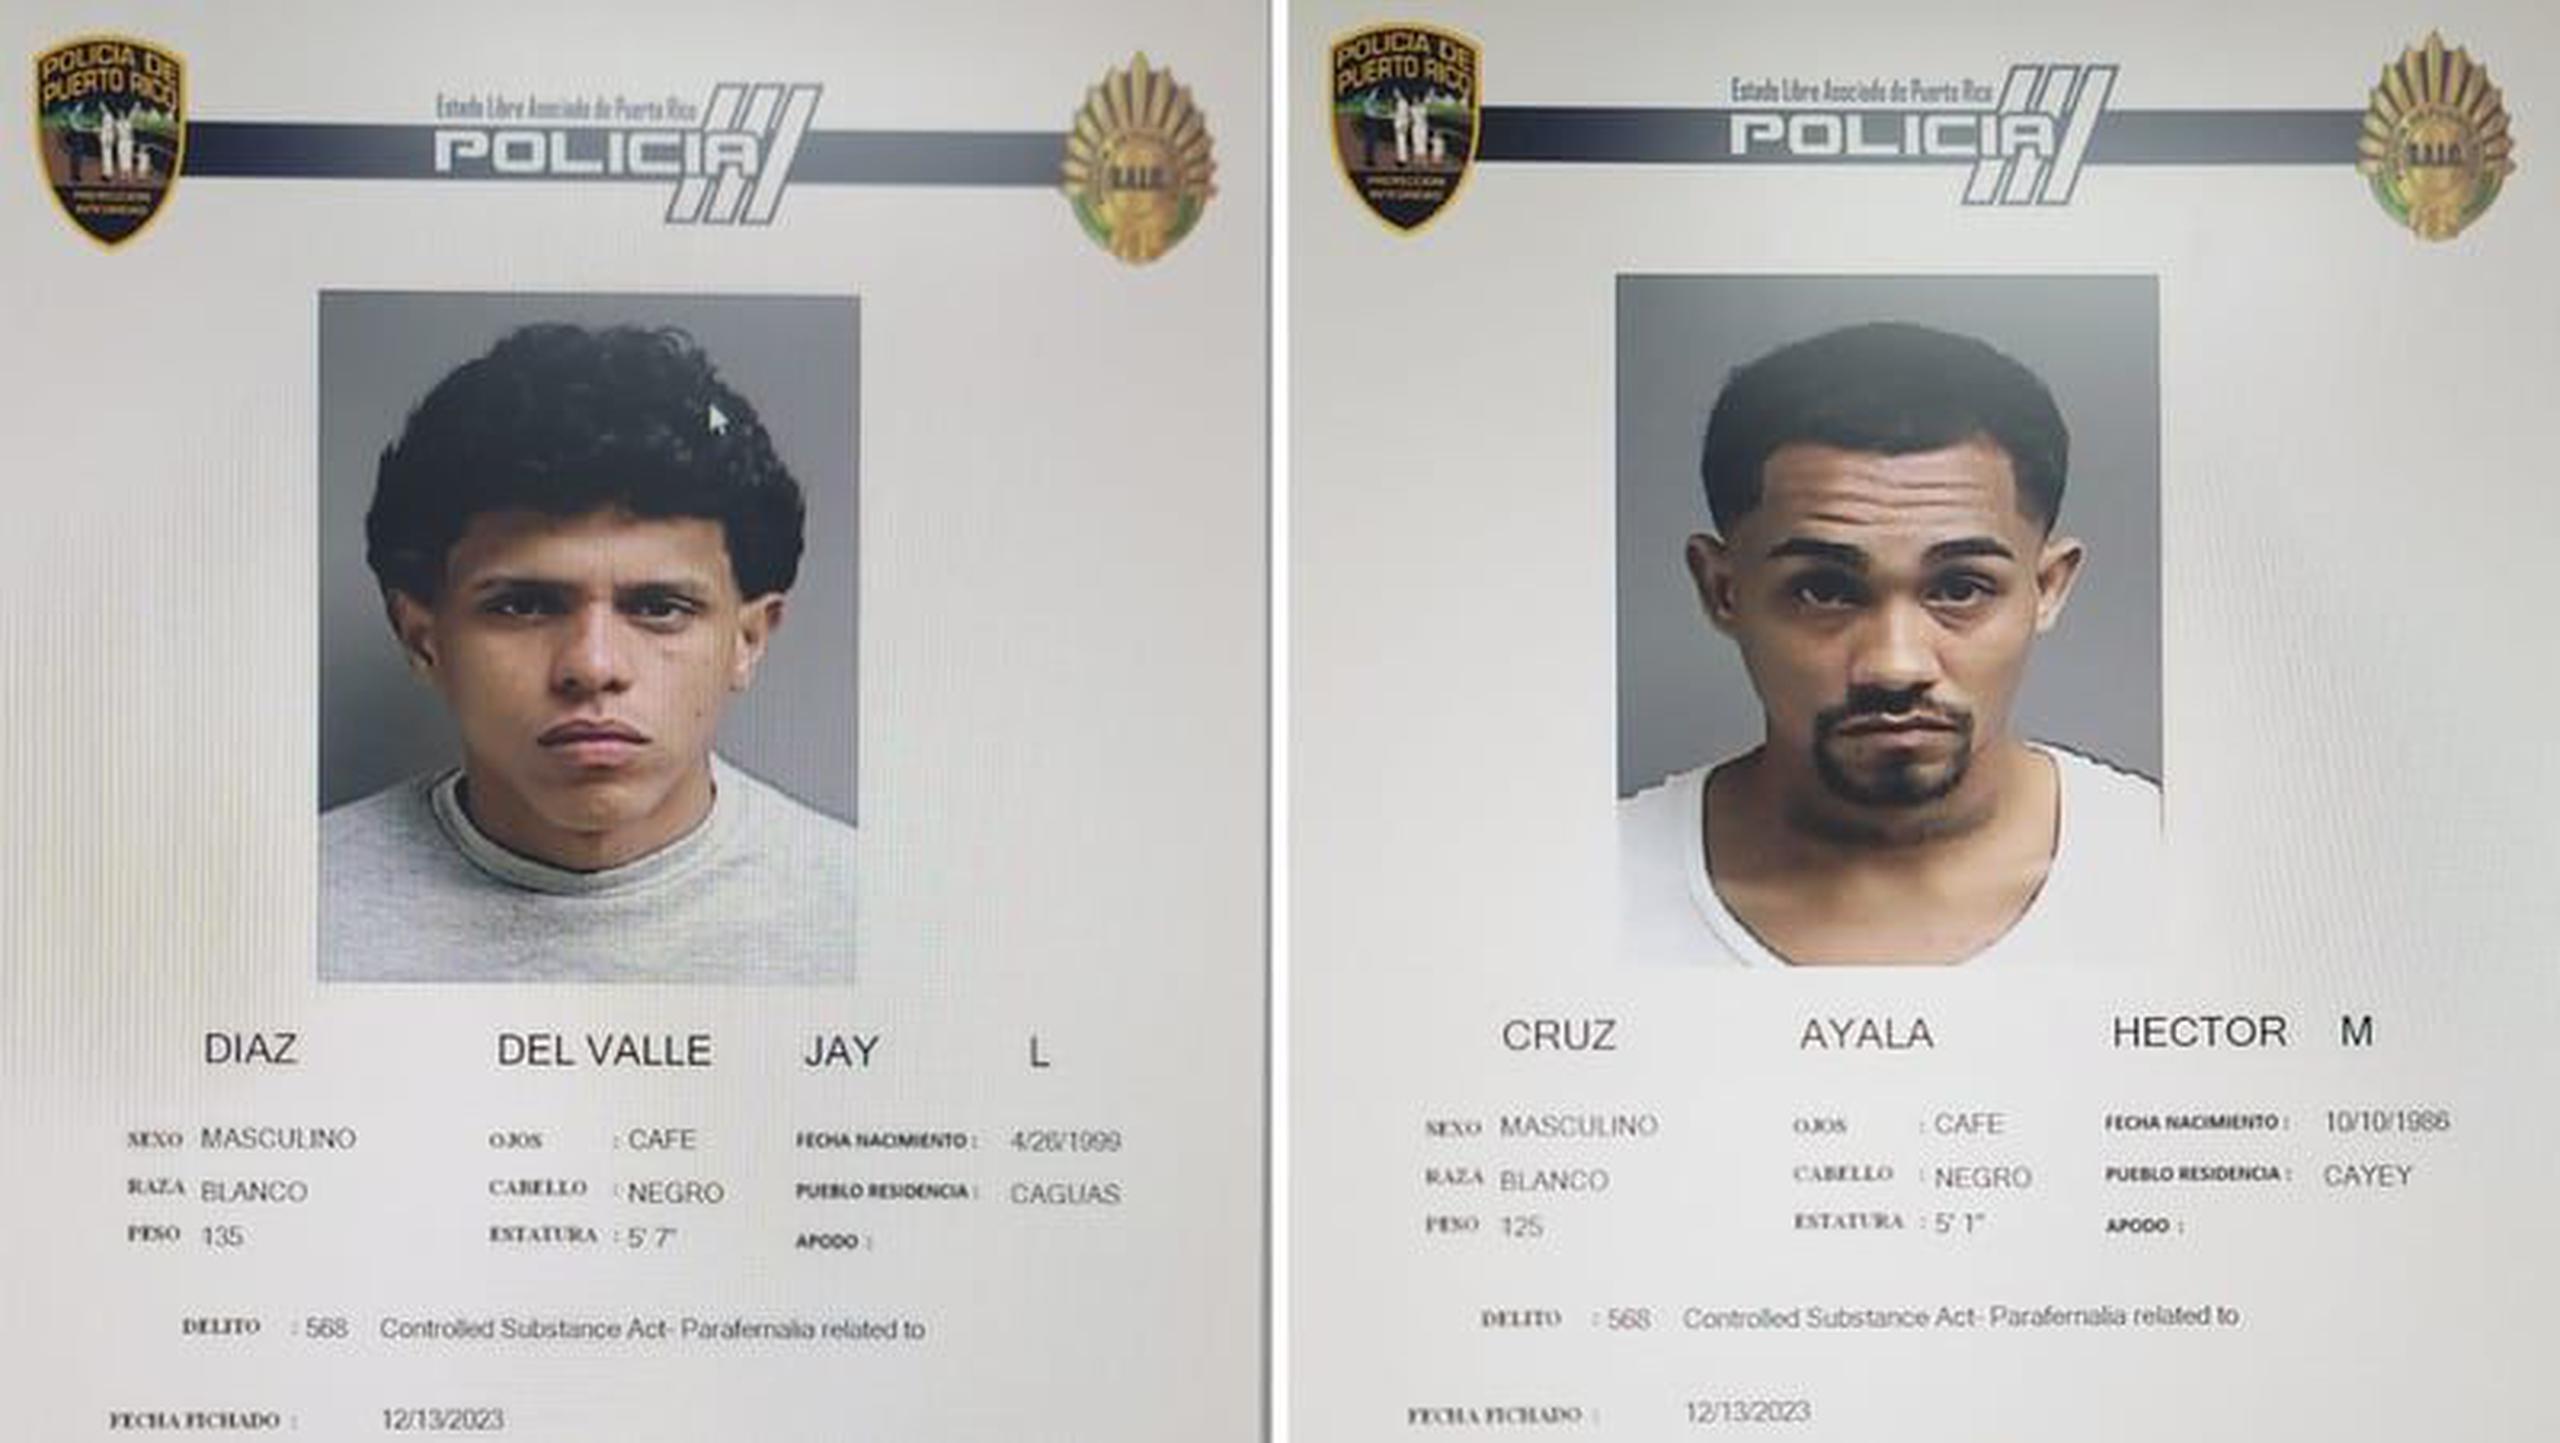 Las autoridades buscan a los fugitivos Héctor M. Cruz Ayala, alias “Gordo Gordo” de 27 años y Jay L. Díaz Del Valle, alias “El Cantante” de 24, ambos vecinos de Cayey.